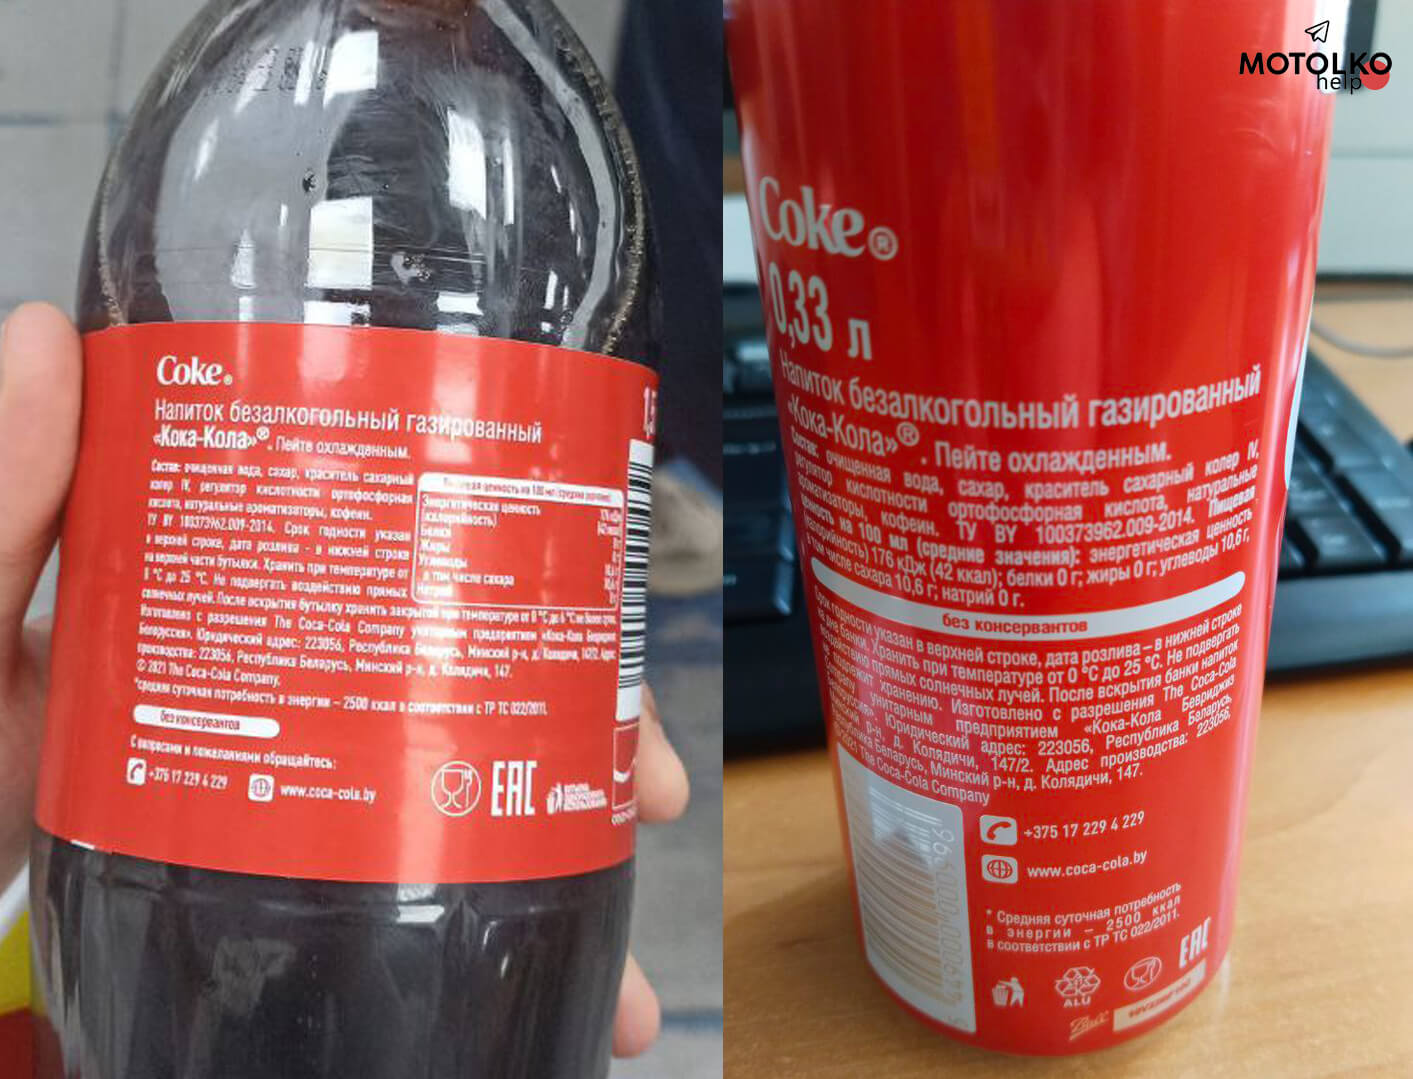 Расследование: в Крыму начали продавать Кока-Колу произведённую в Беларуси